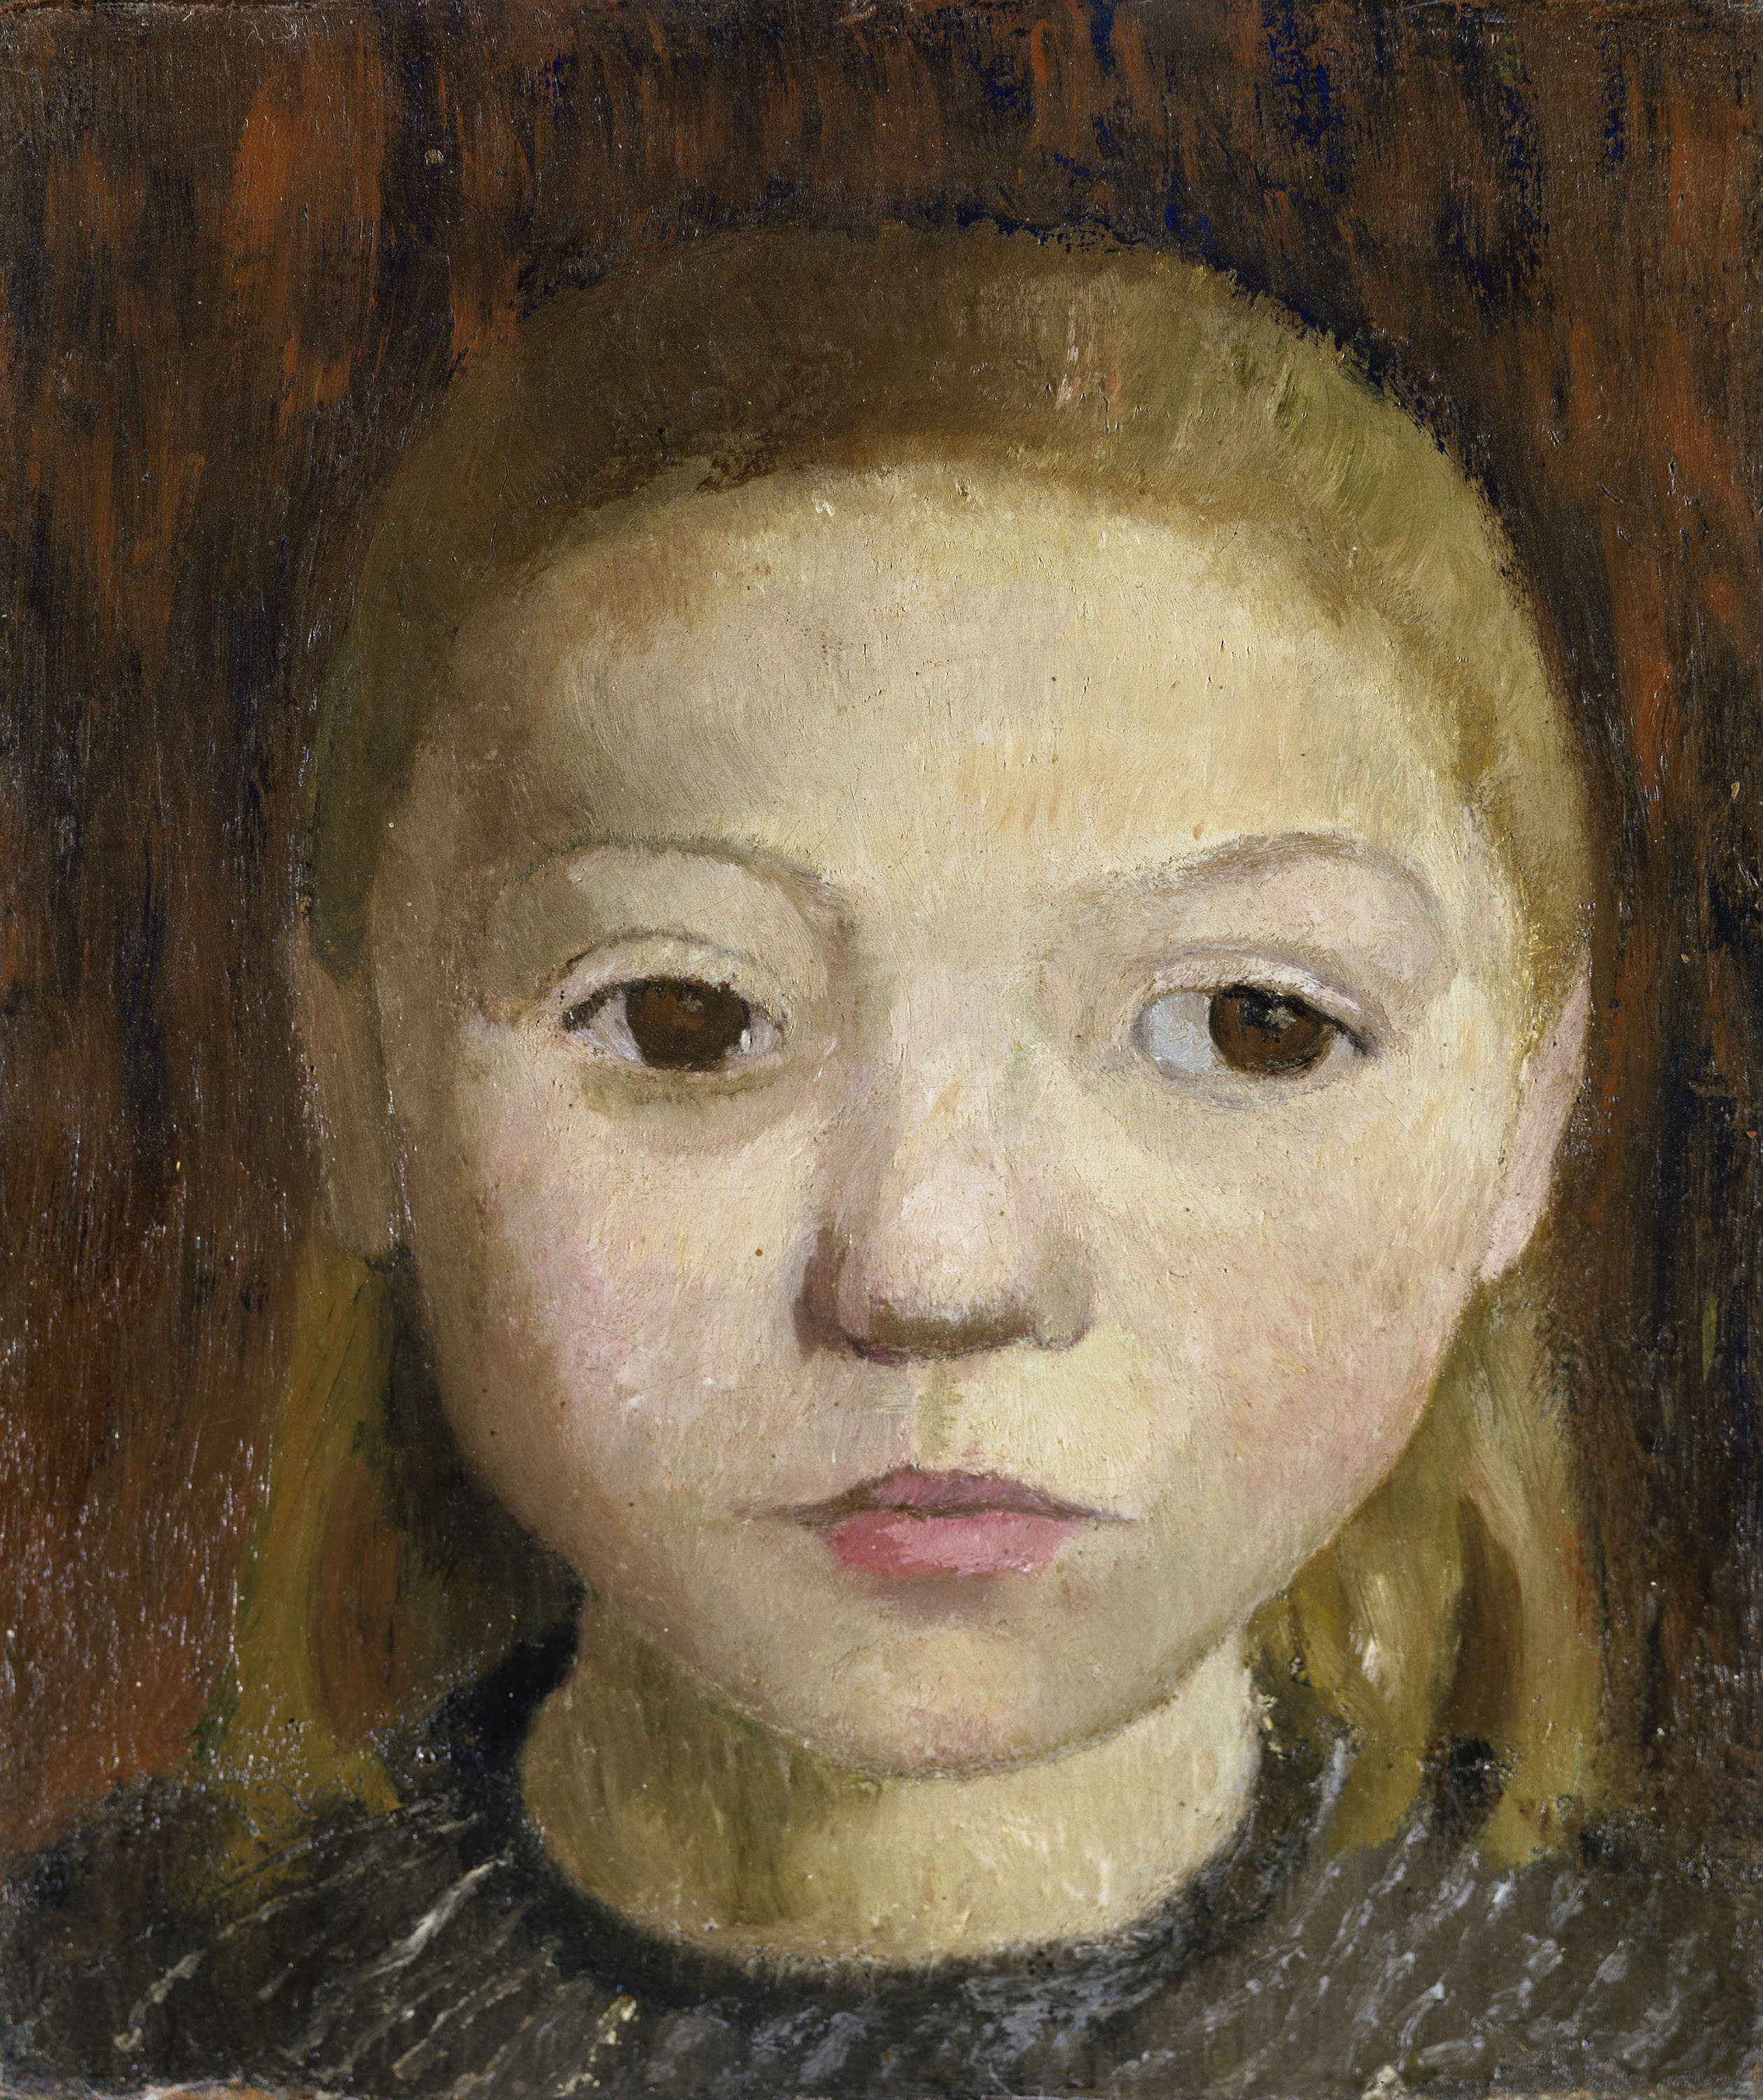 Head of a Girl by Paula Modersohn-Becker - ca. 1906 - 24.5 x 21.0 cm Städel Museum